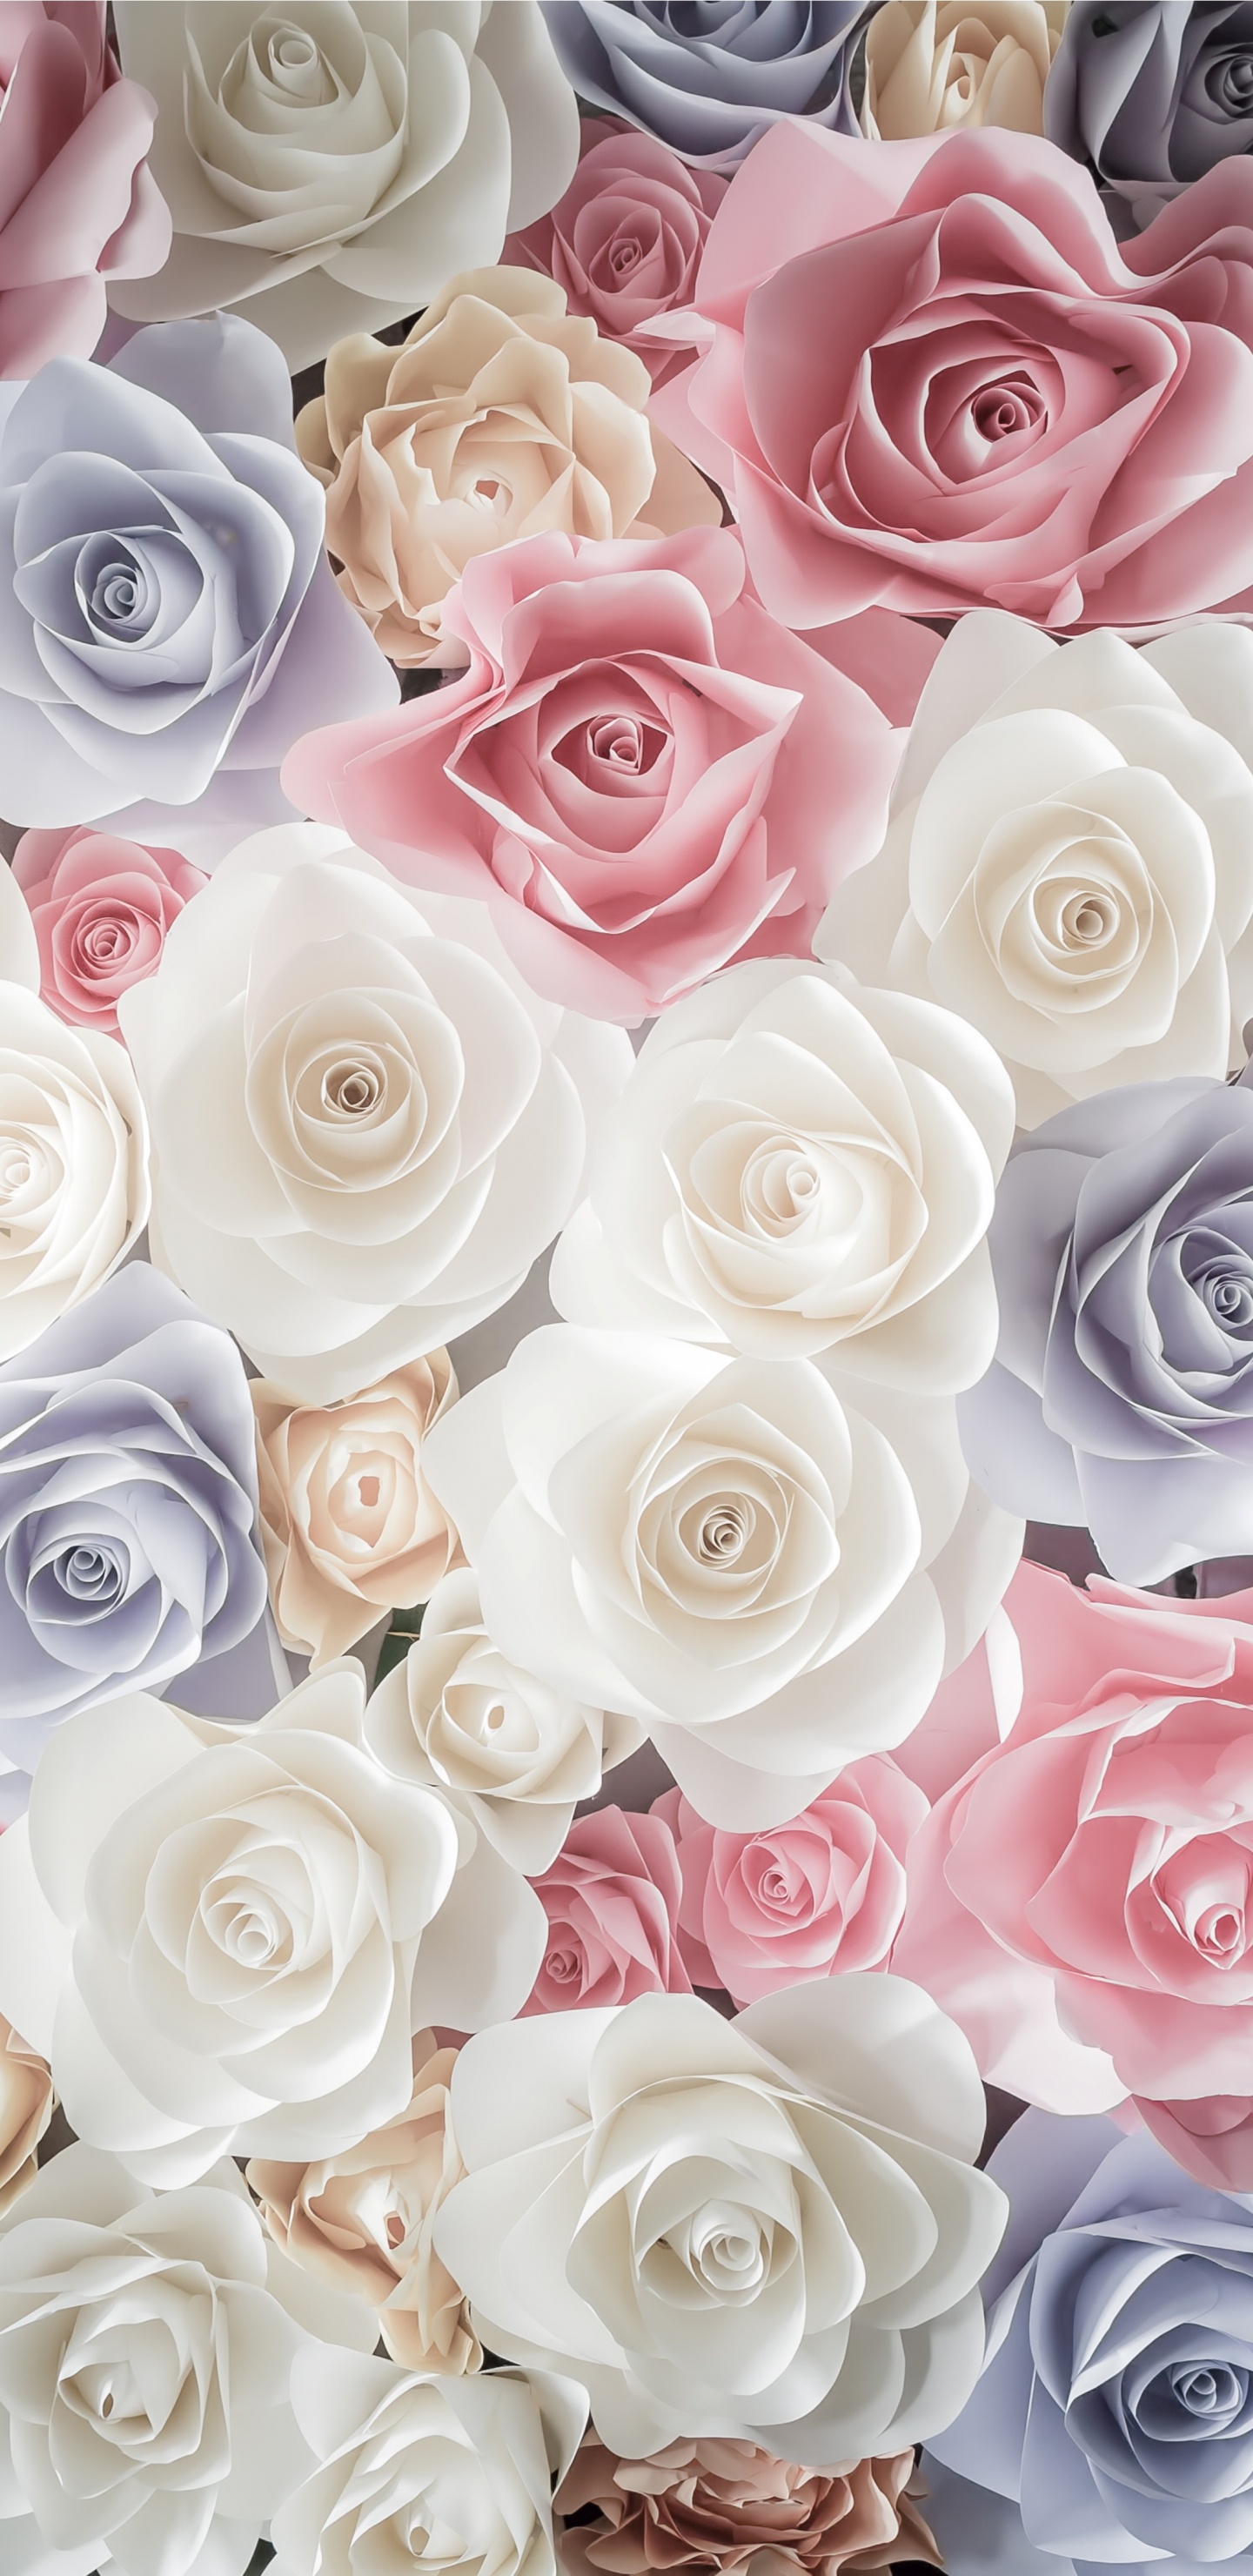 玫瑰花园, 切花, 粉红色, 玫瑰家庭, 花卉设计 壁纸 1440x2960 允许